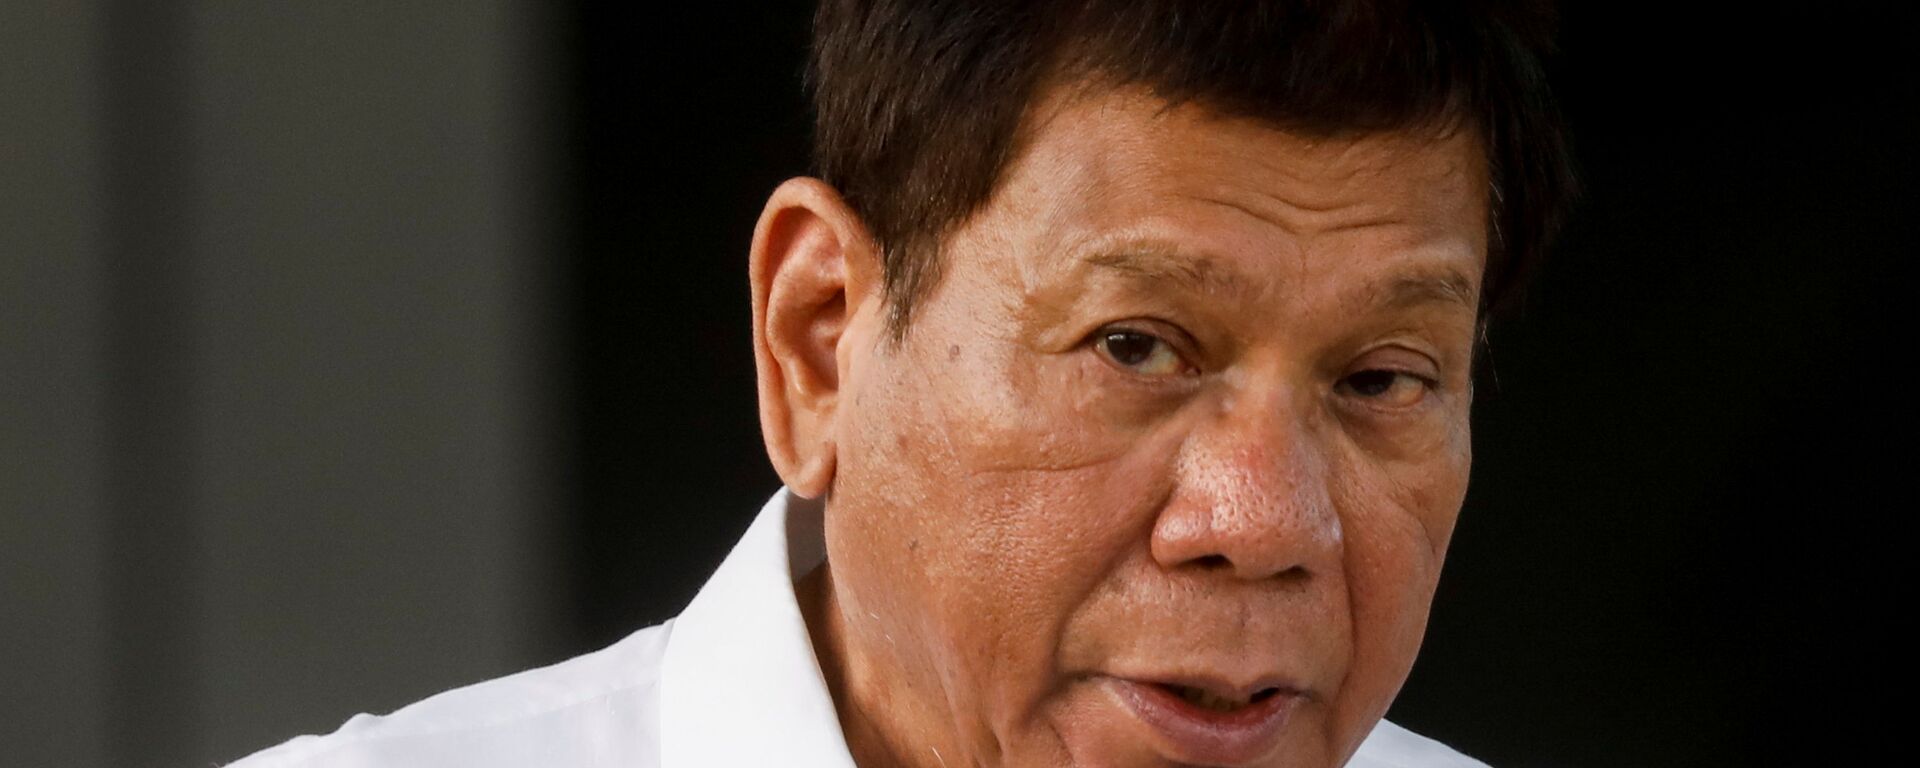 Tổng thống Philippines Rodrigo Duterte phát biểu trong buổi lễ đưa vắc xin COVID-19 đầu tiên đến đất nước, tại Căn cứ Không quân Villamor ở Pasay, Metro Manila, Philippines, ngày 28 tháng 2 năm 2021 - Sputnik Việt Nam, 1920, 14.05.2021